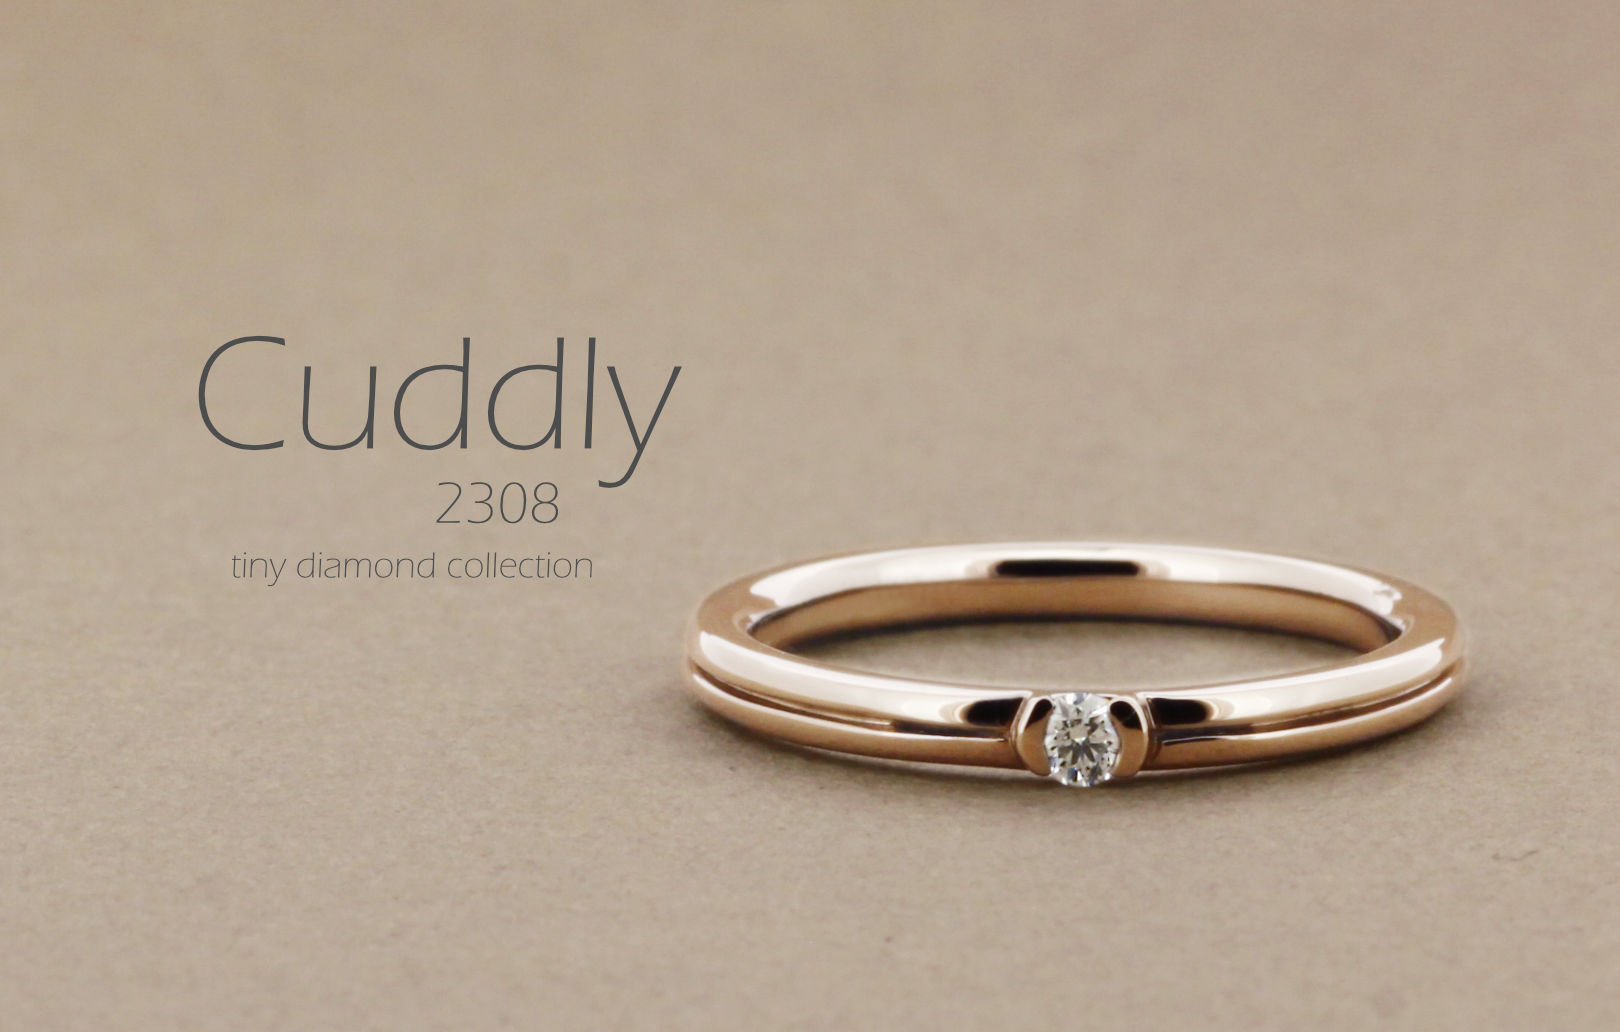 「Cuddly」という名前が付いた、真ん中にラインが入った丸みのあるアームに1粒の小さなダイヤを留めた指輪の詳細ページ